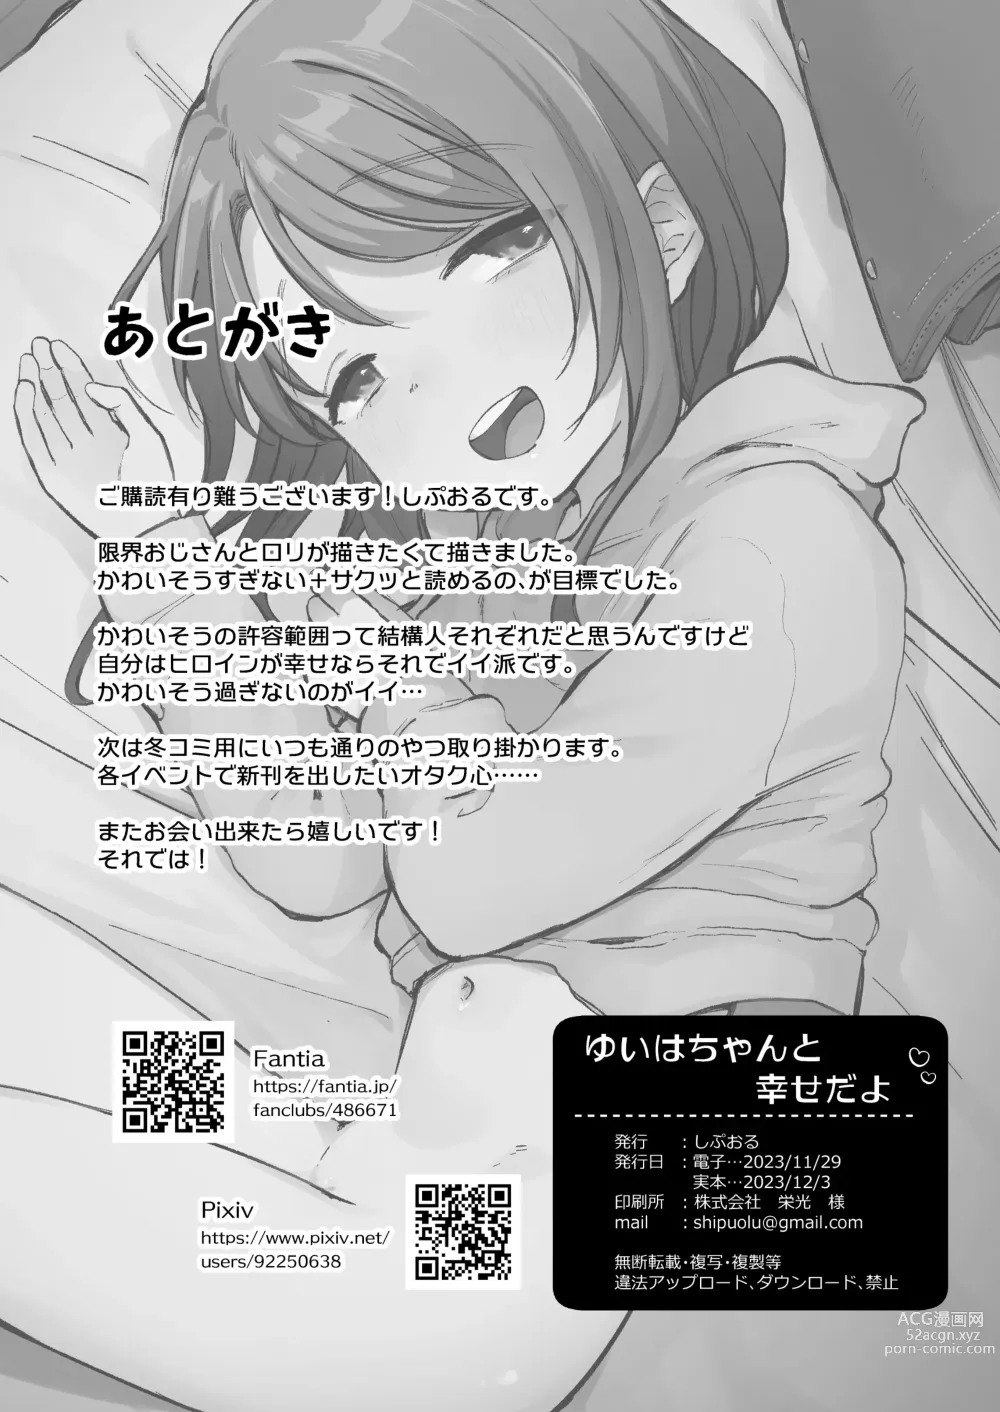 Page 27 of manga Yui wa Chanto Shiawase da yo